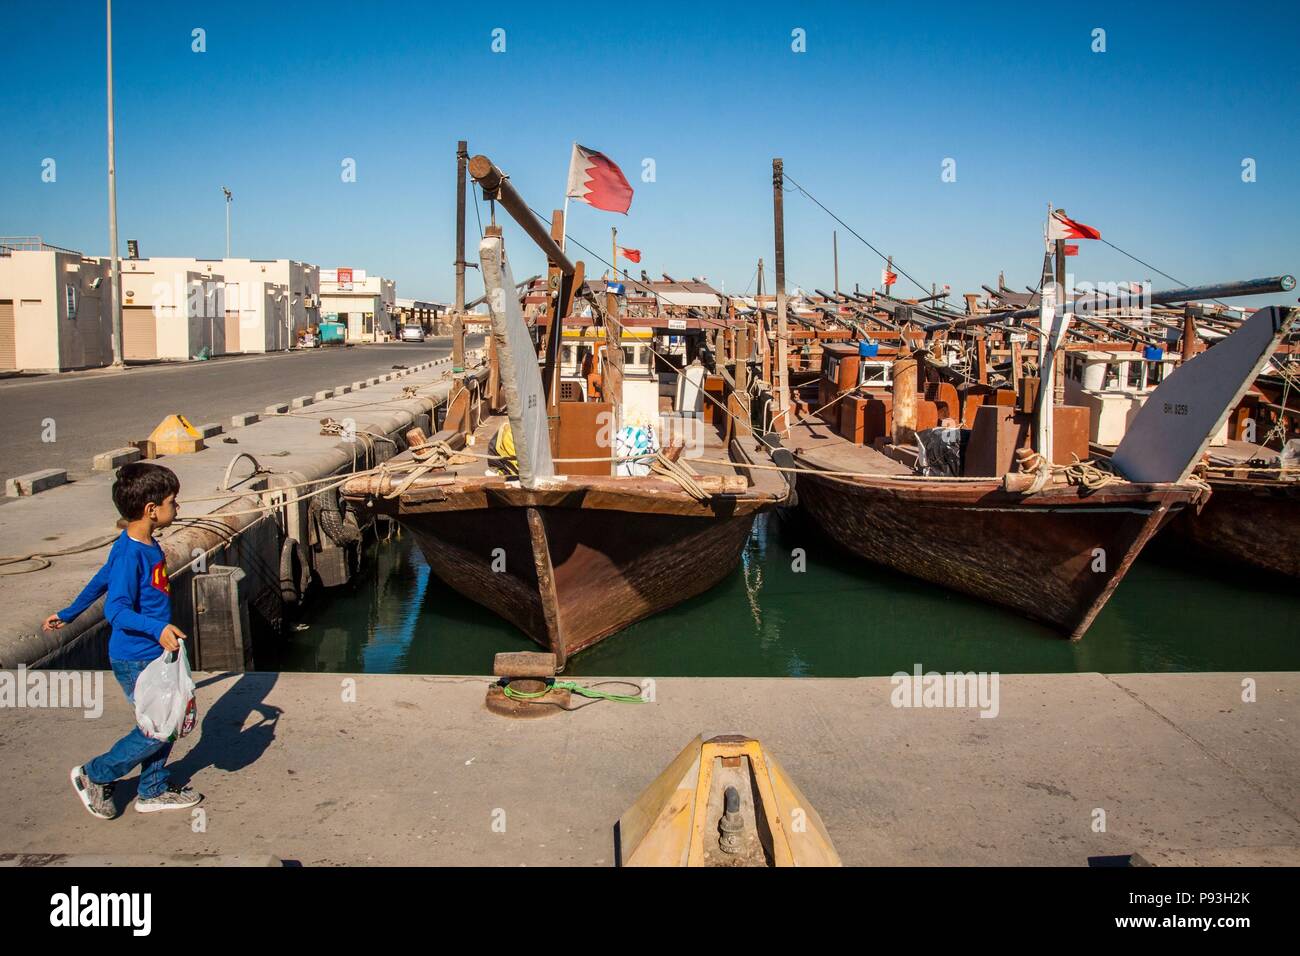 Königreich von Bahrain, Persischer Golf, NAHER OSTEN Stockfoto